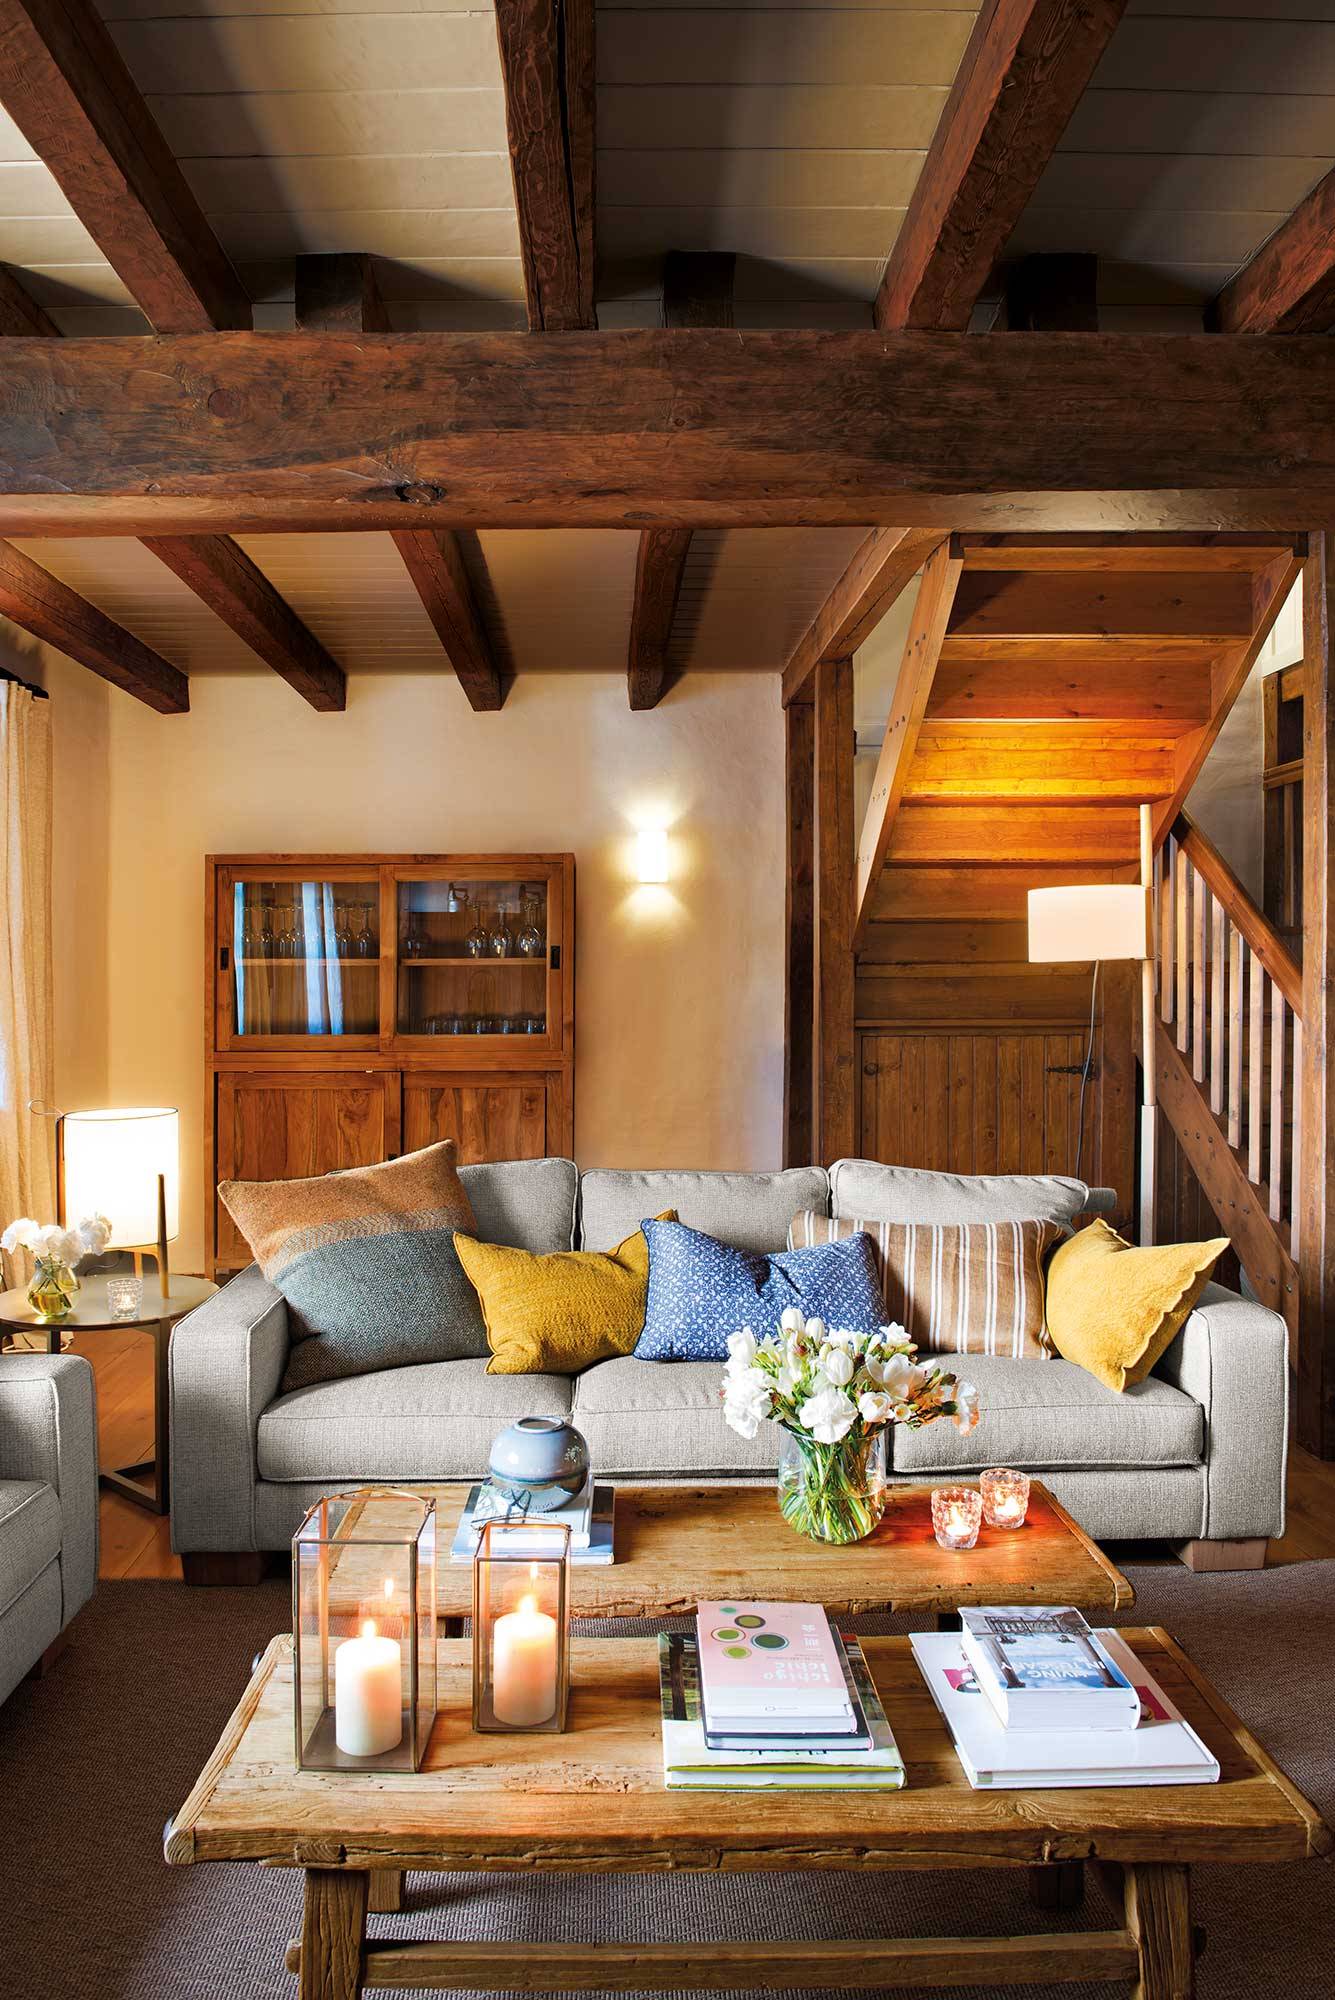 Salón rústico con sofás modernos y alacena de madera_00517304